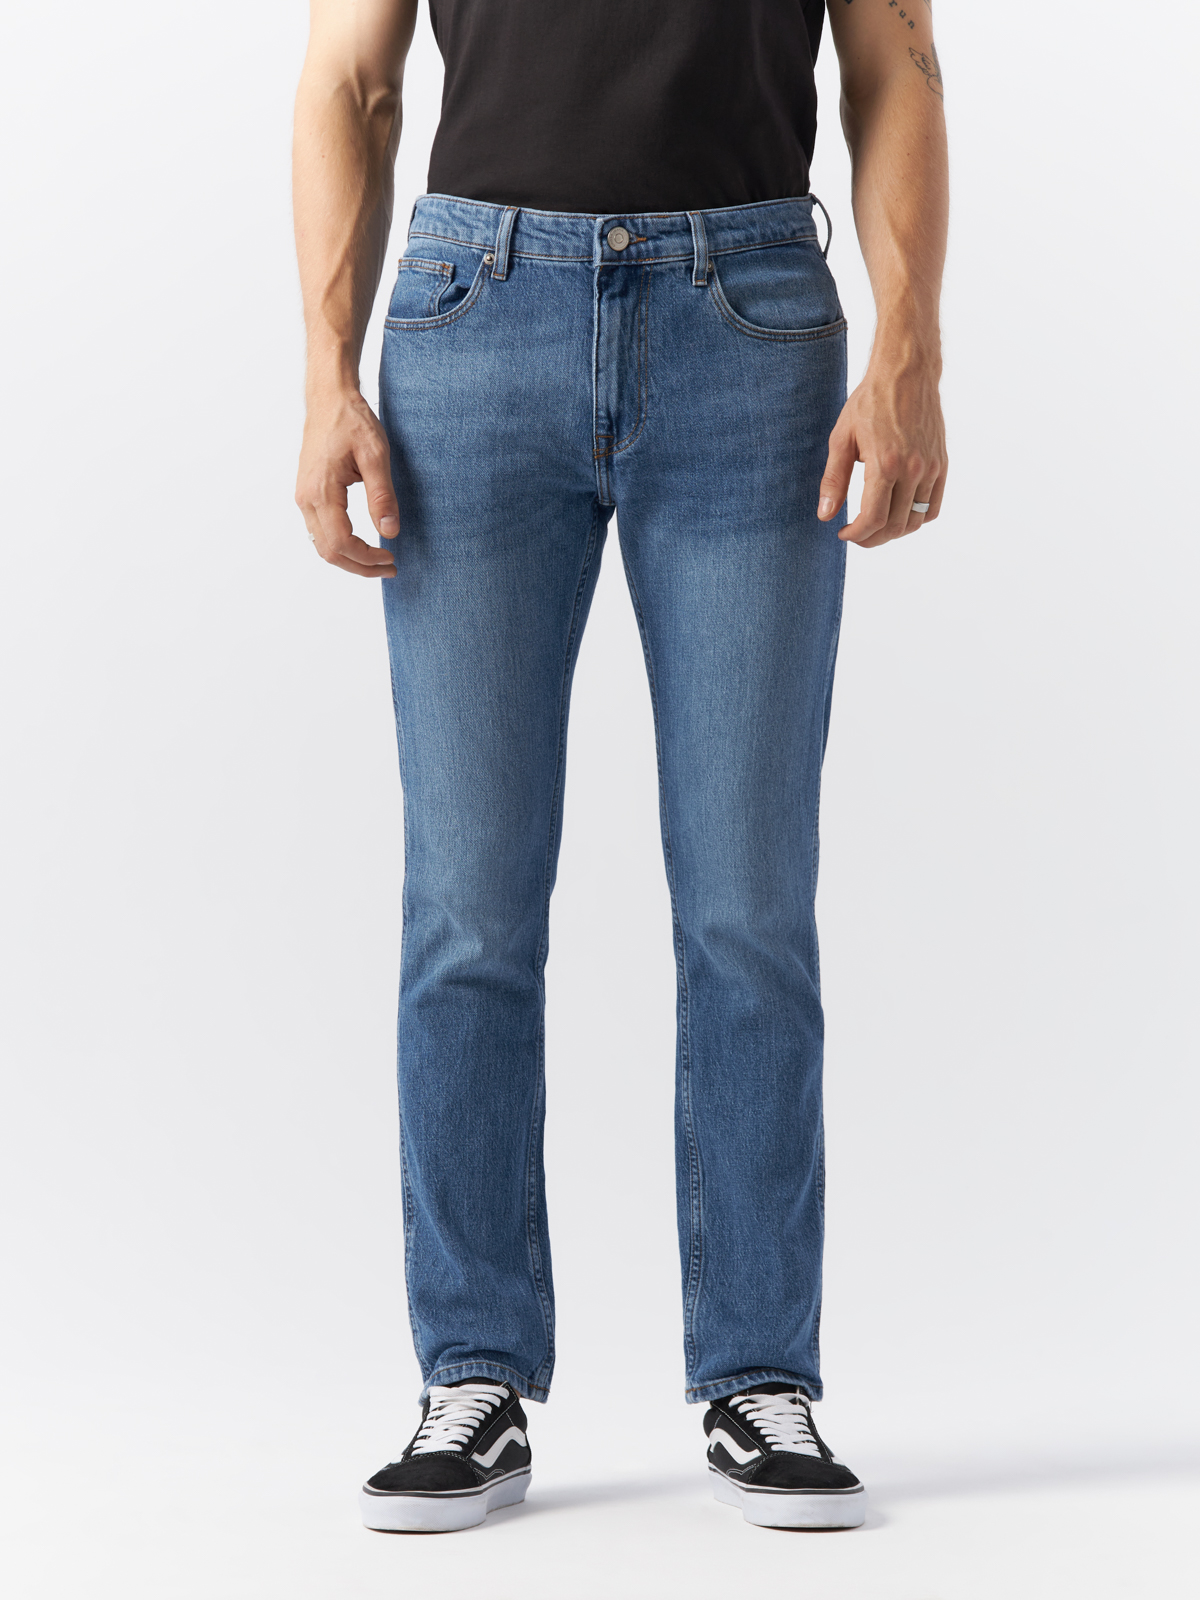 Джинсы Cross Jeans для мужчин, C 132-070, размер 38-32, синие